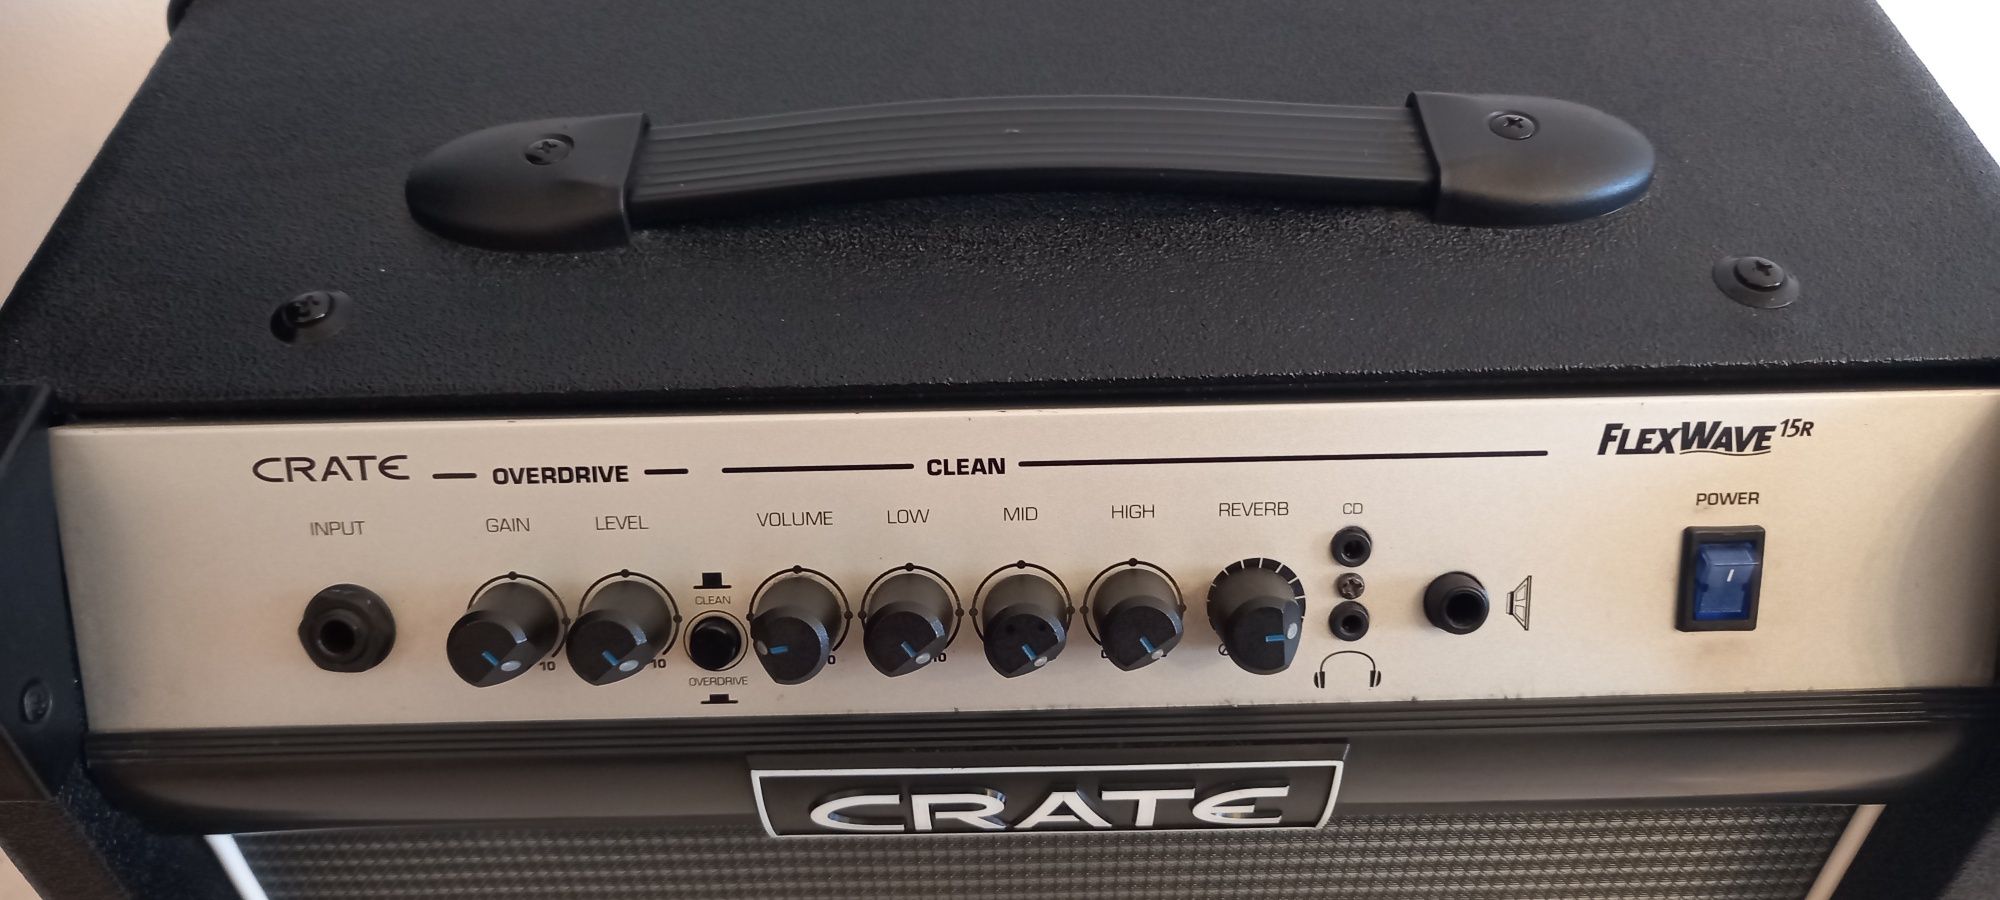 Amplificador Crate Flexwave 15RUpgrade 30 watts